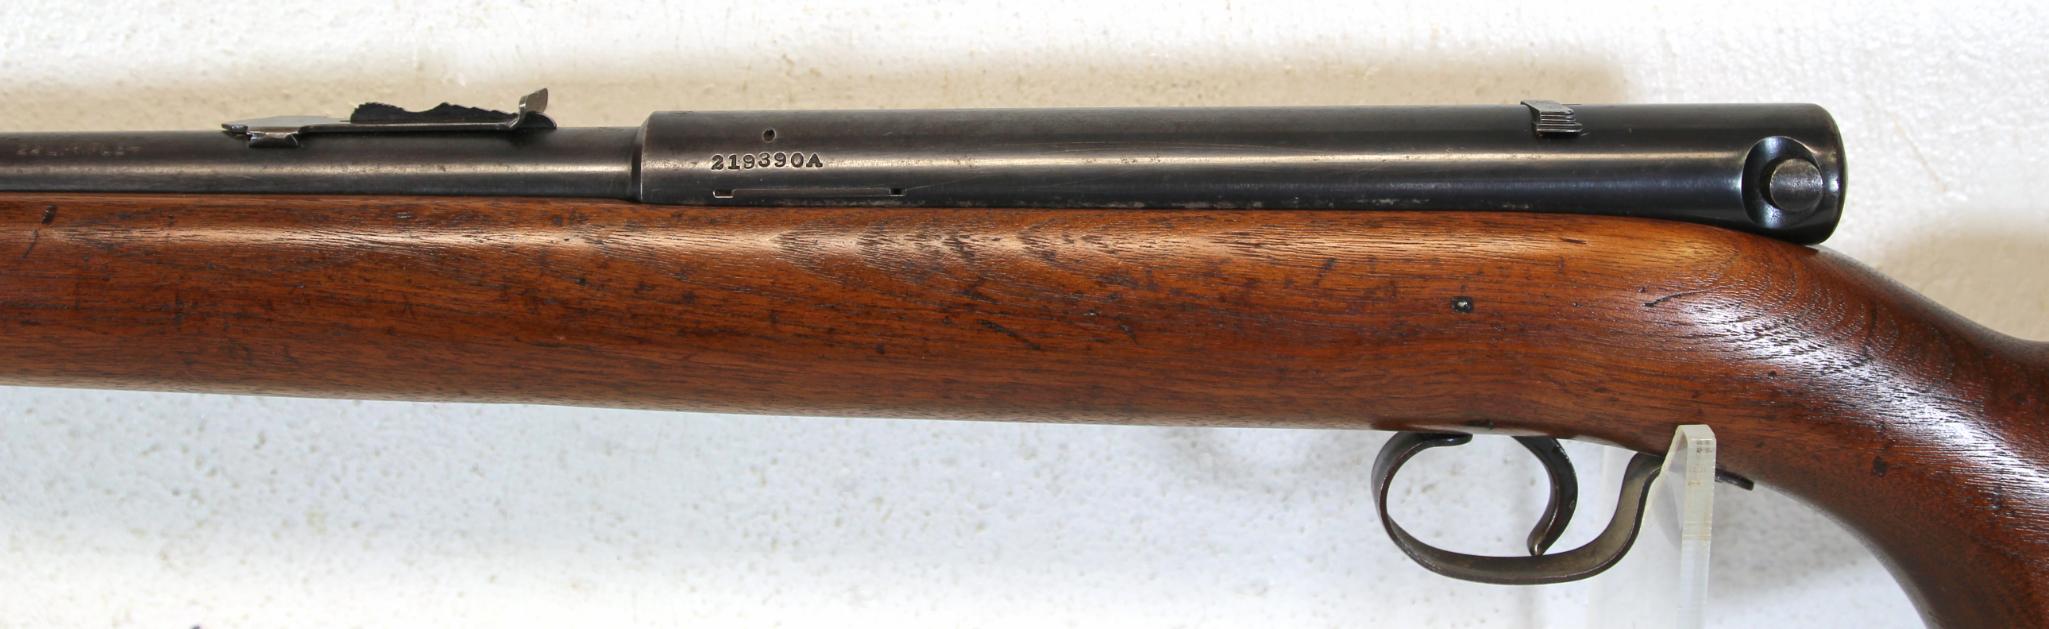 Winchester Model 74 .22 LR Semi-Auto Rifle SN#219390A...